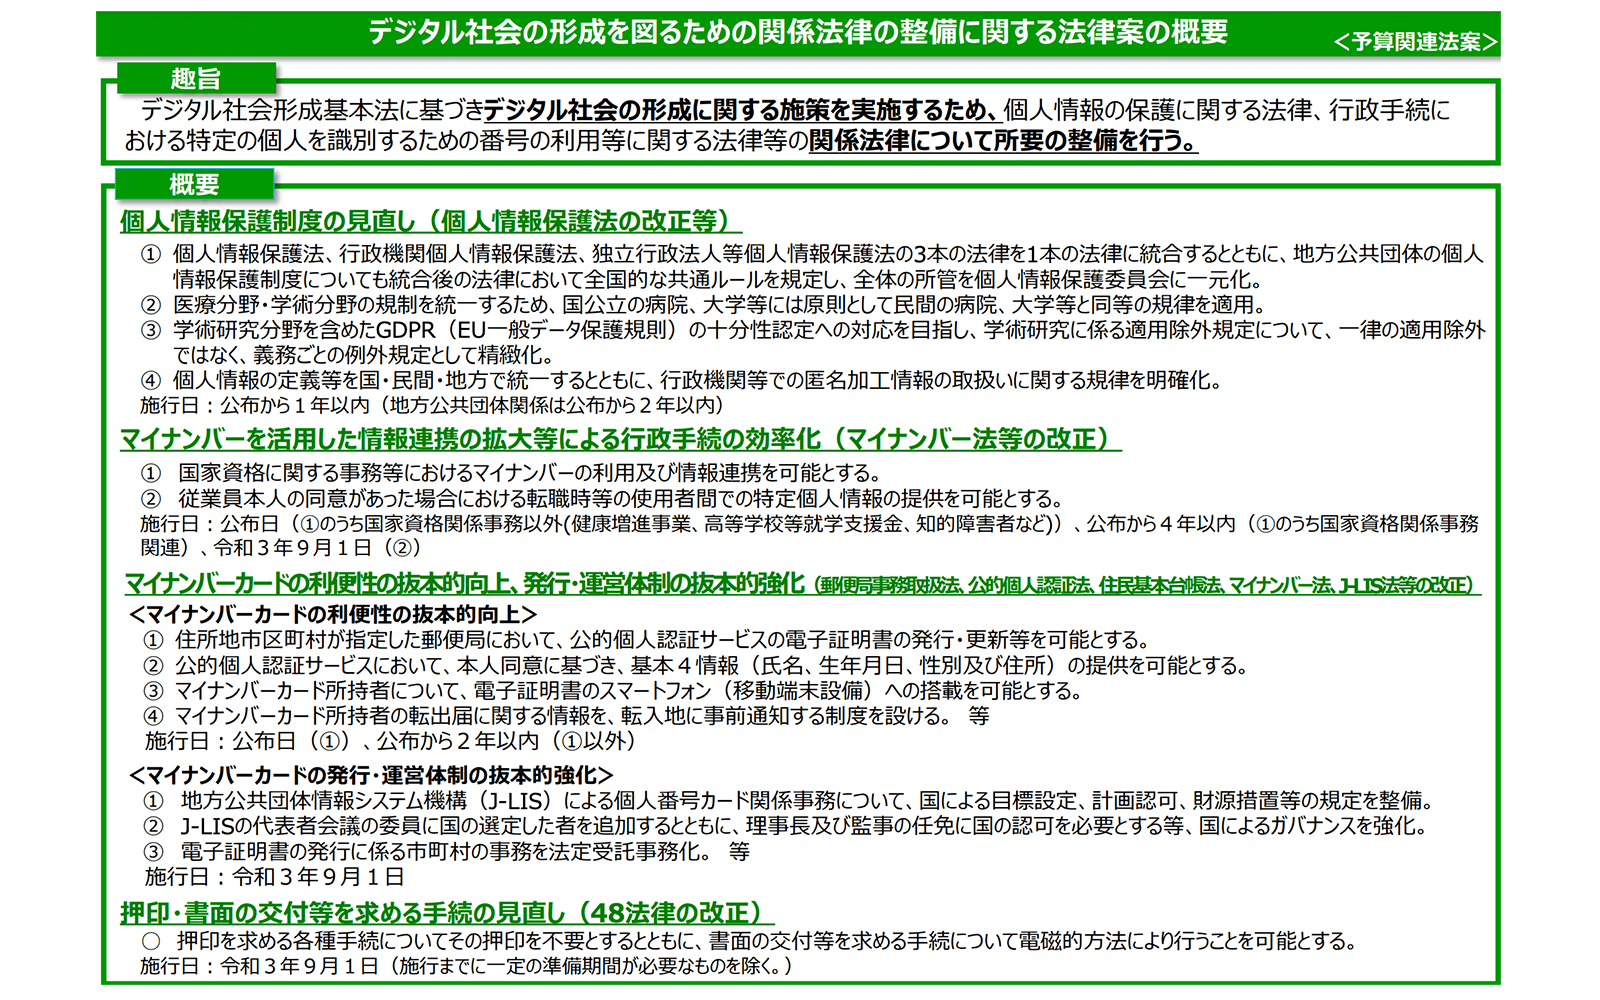 デジタル改革関連6法案のうち、デジタル社会形成関係整備法（案）を解説 https://www.cas.go.jp/jp/houan/210209_3/siryou1.pdf 2021年2月10日最終アクセス